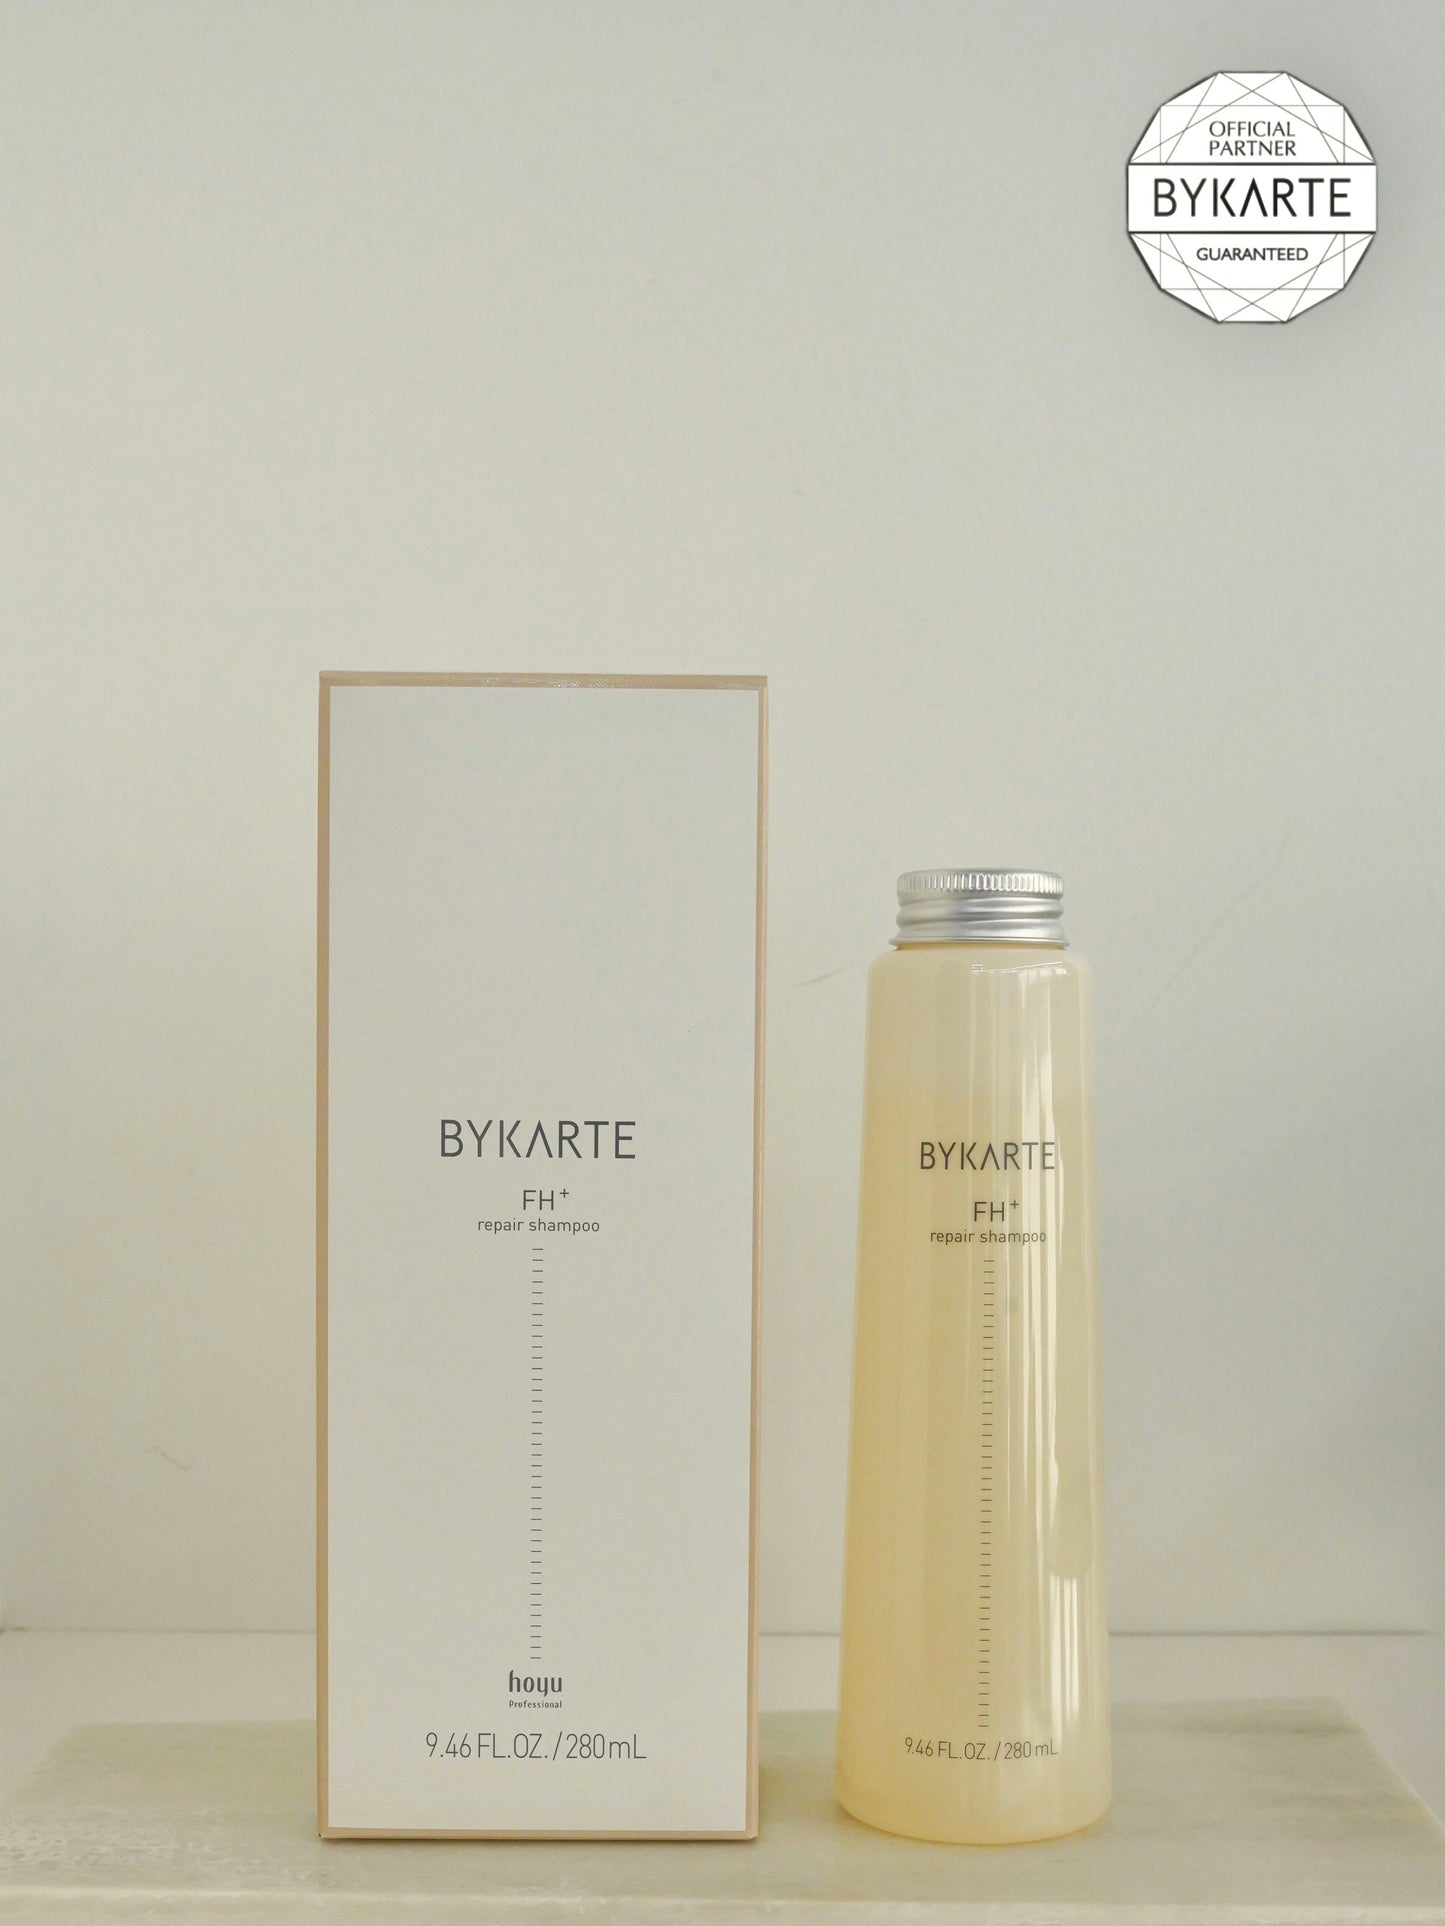 BYKARTE FH+ repair shampoo 280ml